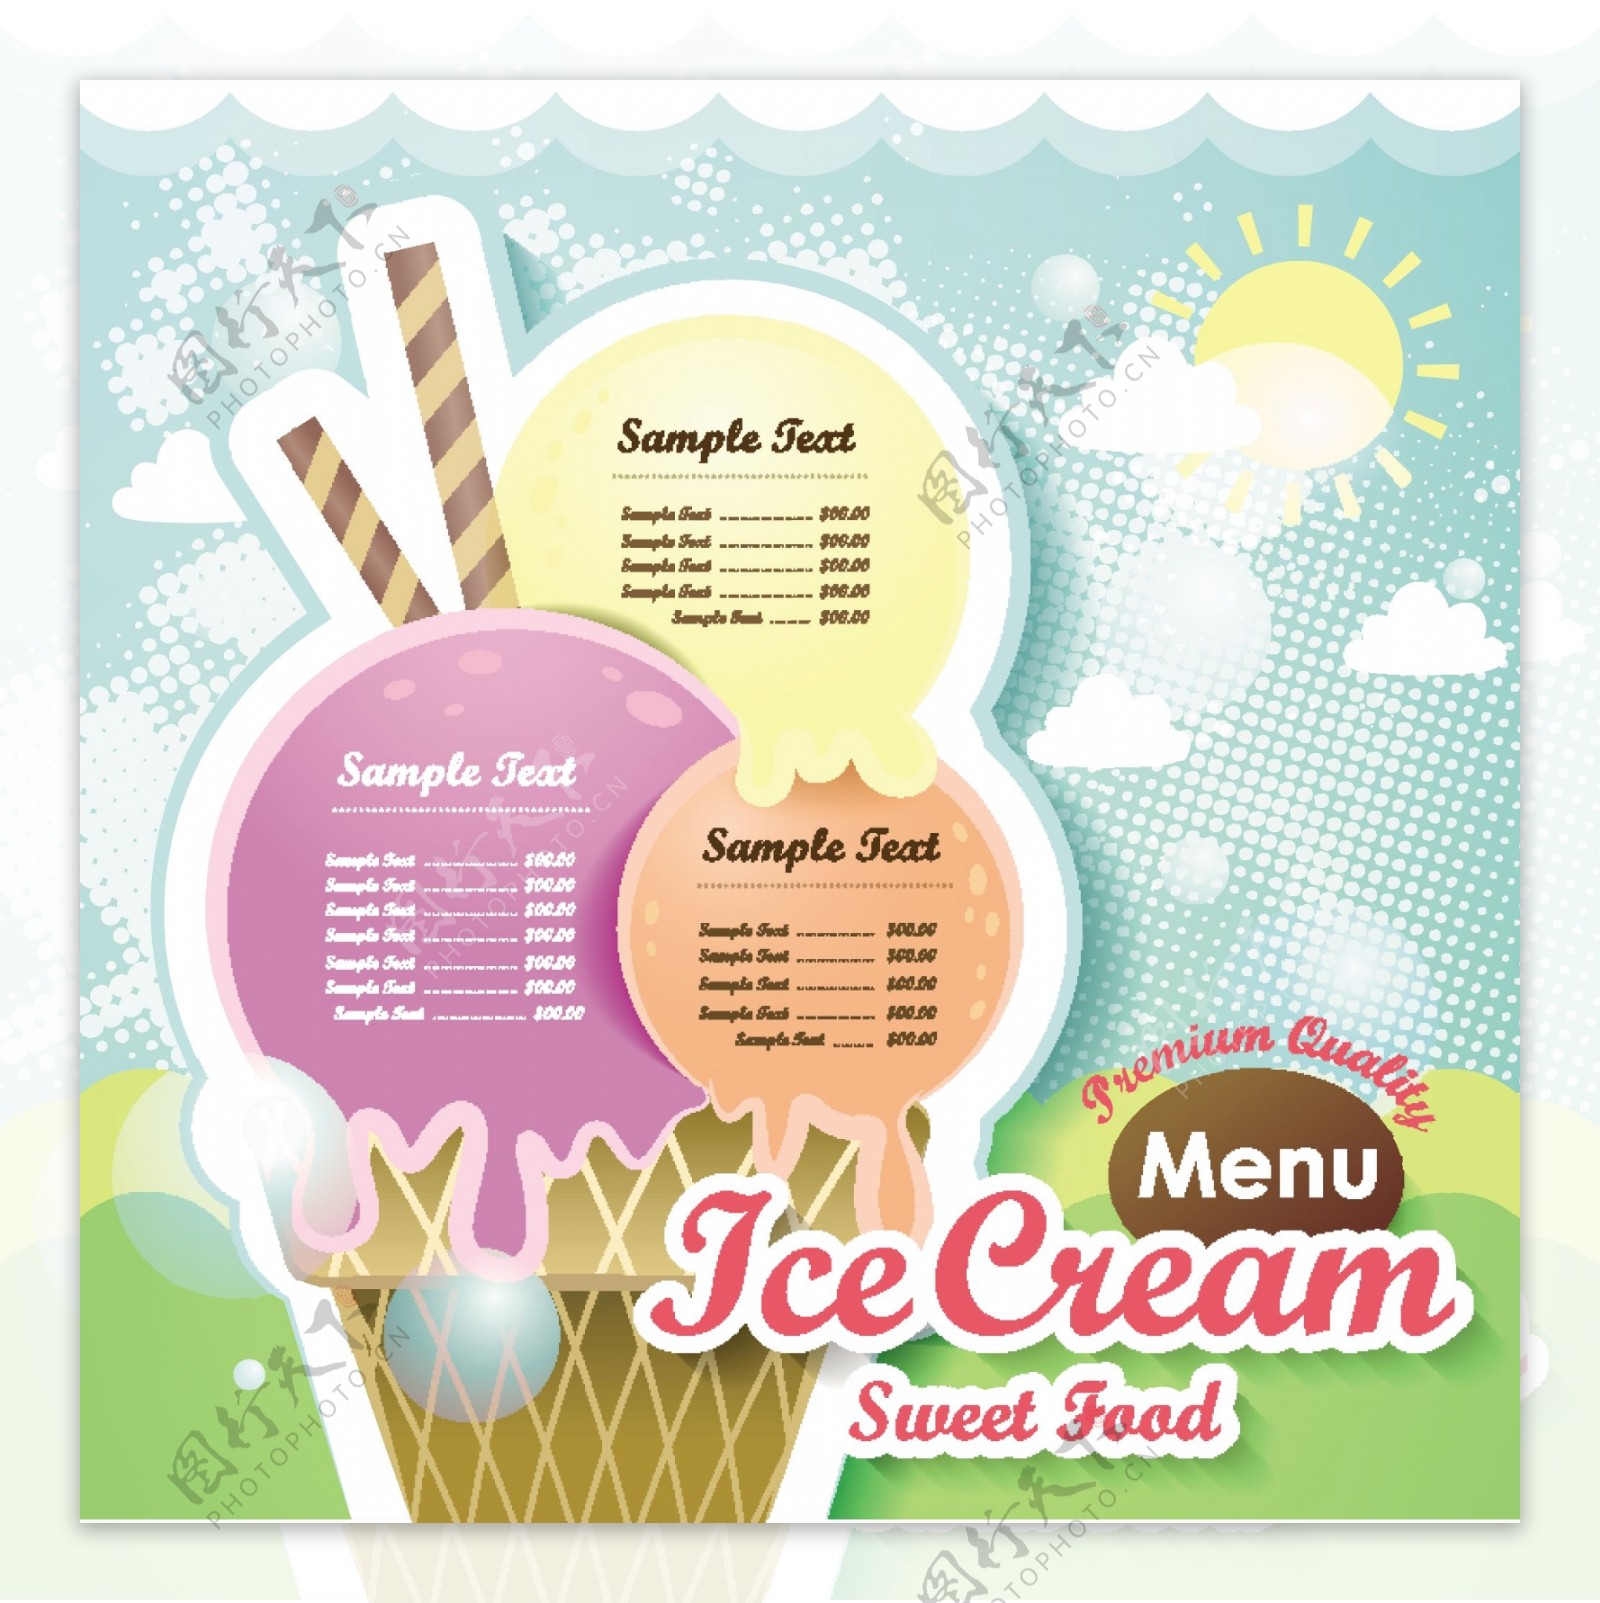 冰淇淋甜的食物菜单设计矢量